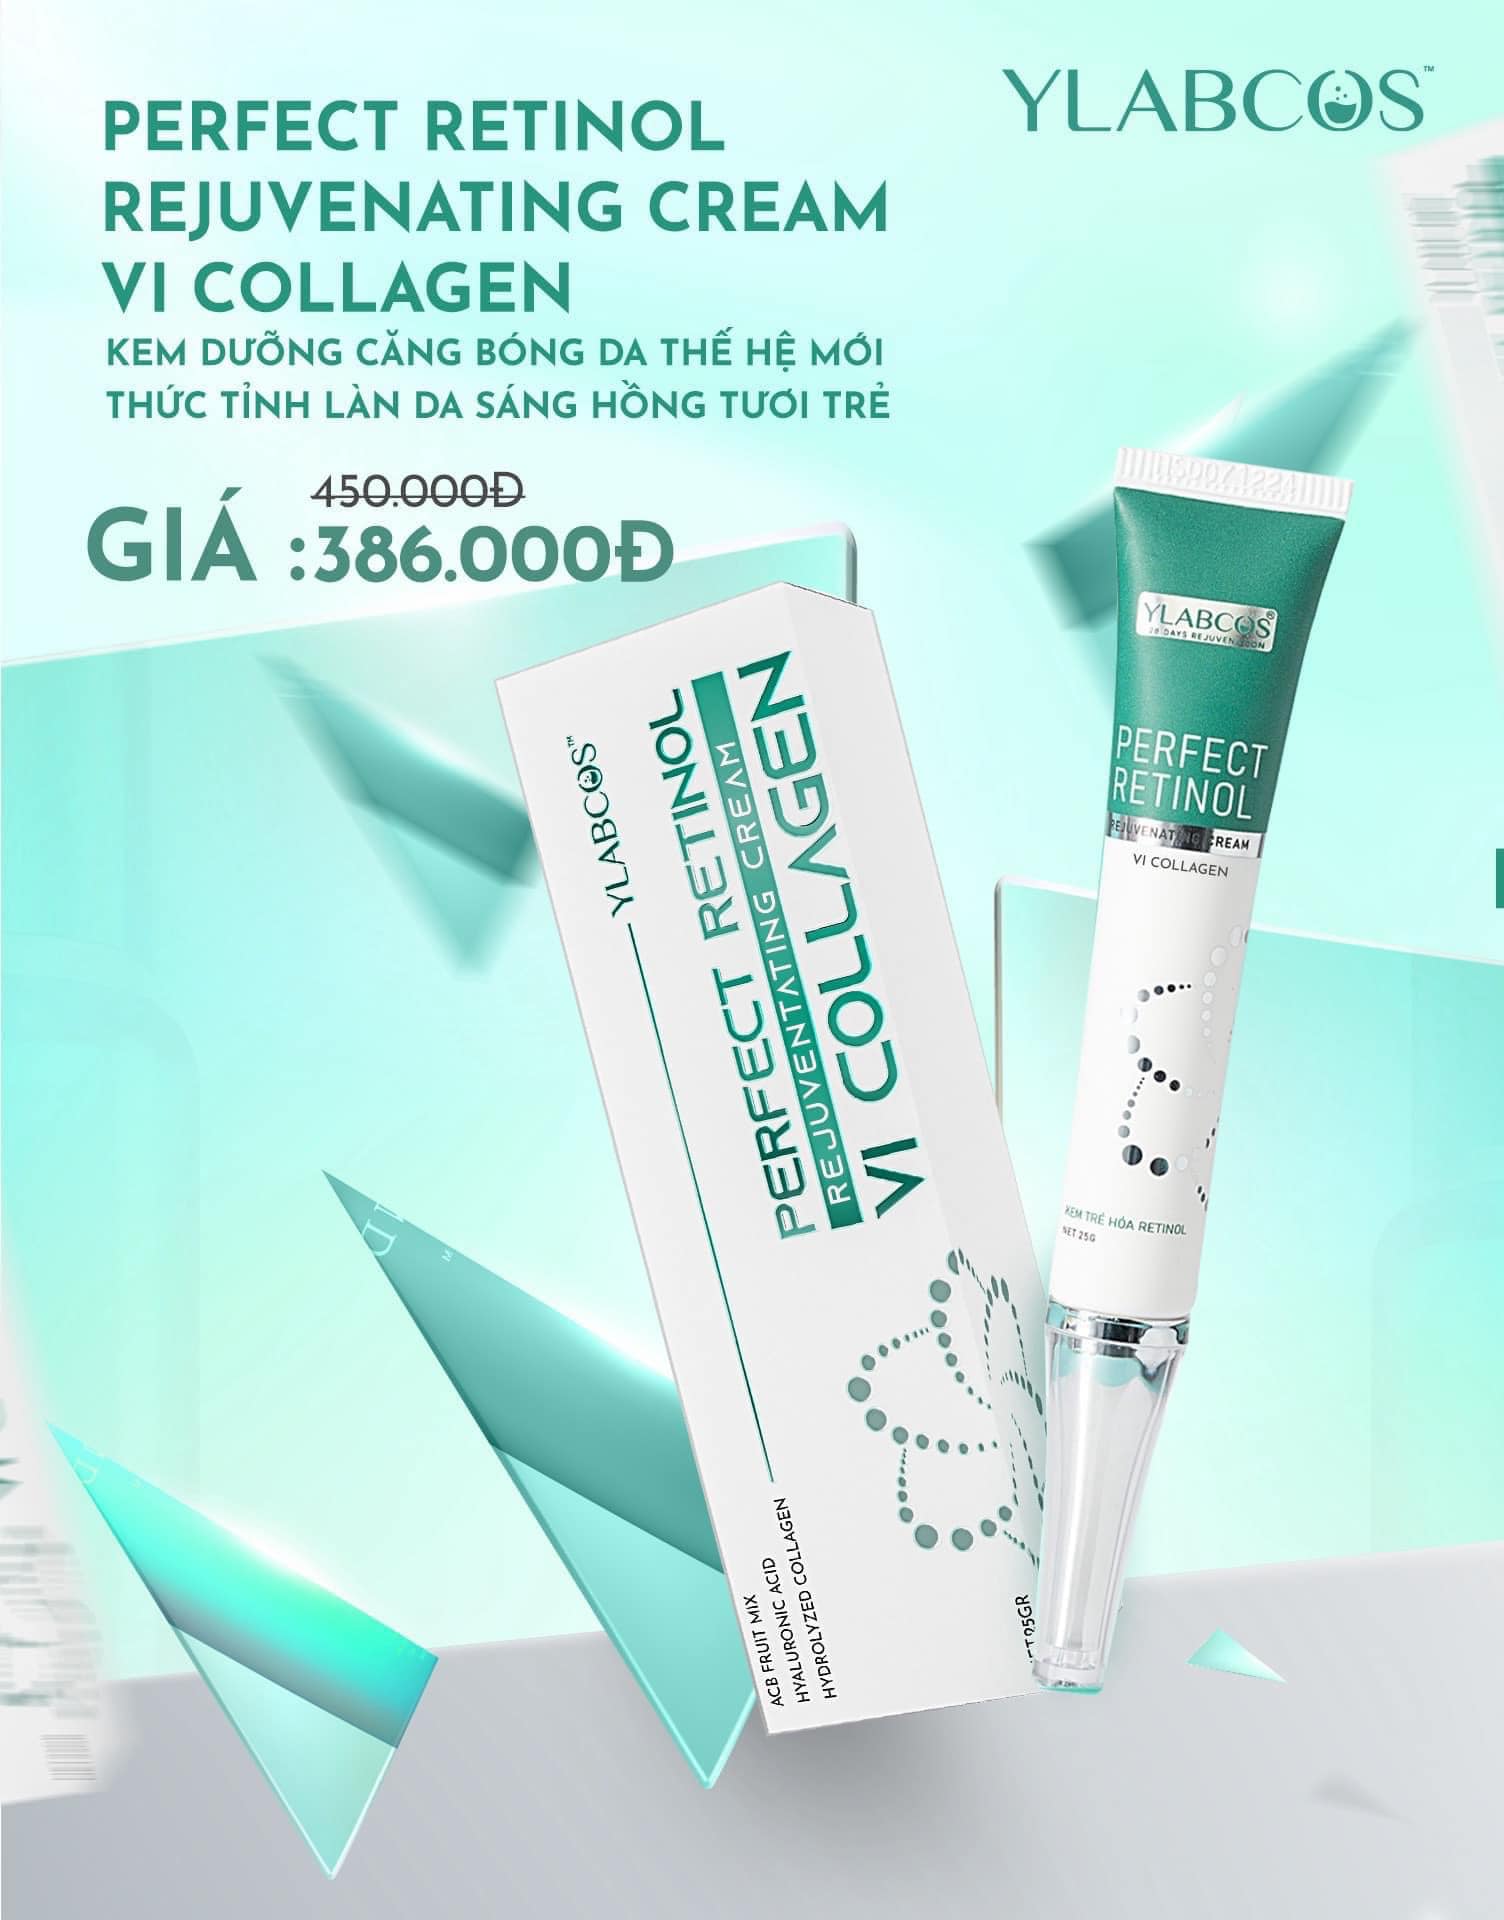 vi-collagen-ylabcos-rejuvenating-cream